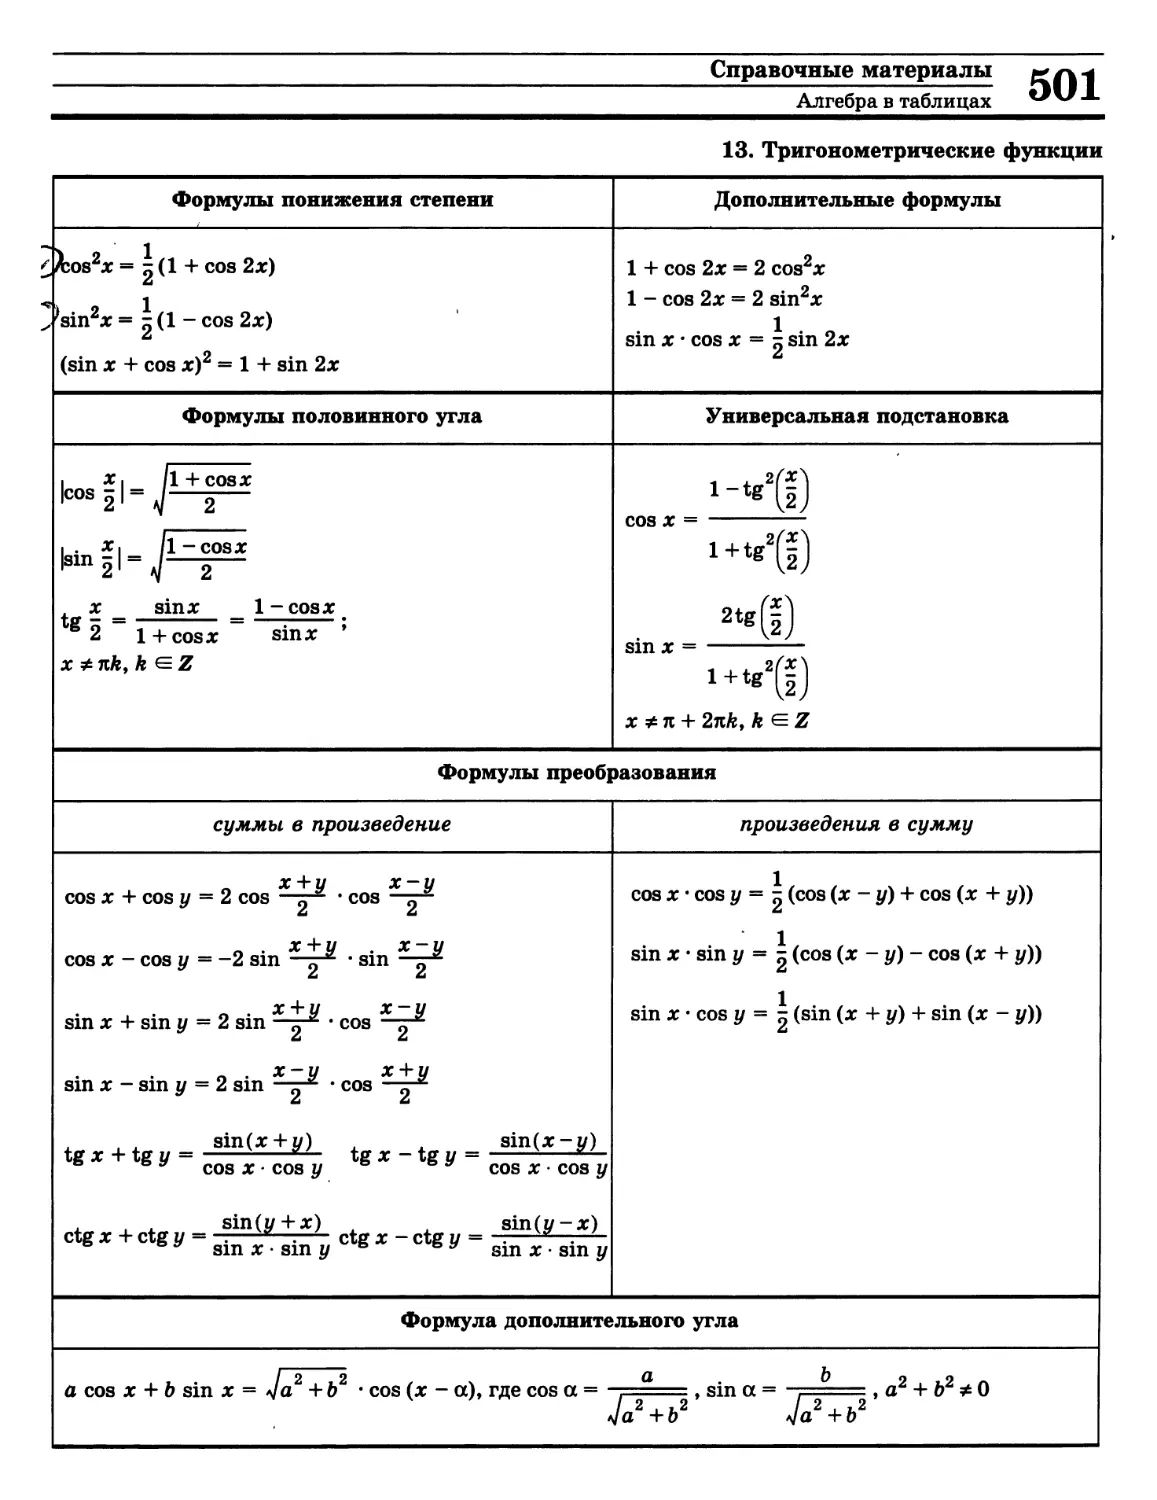 Формулы понижения степени тригонометрических функций
>>>
>>>